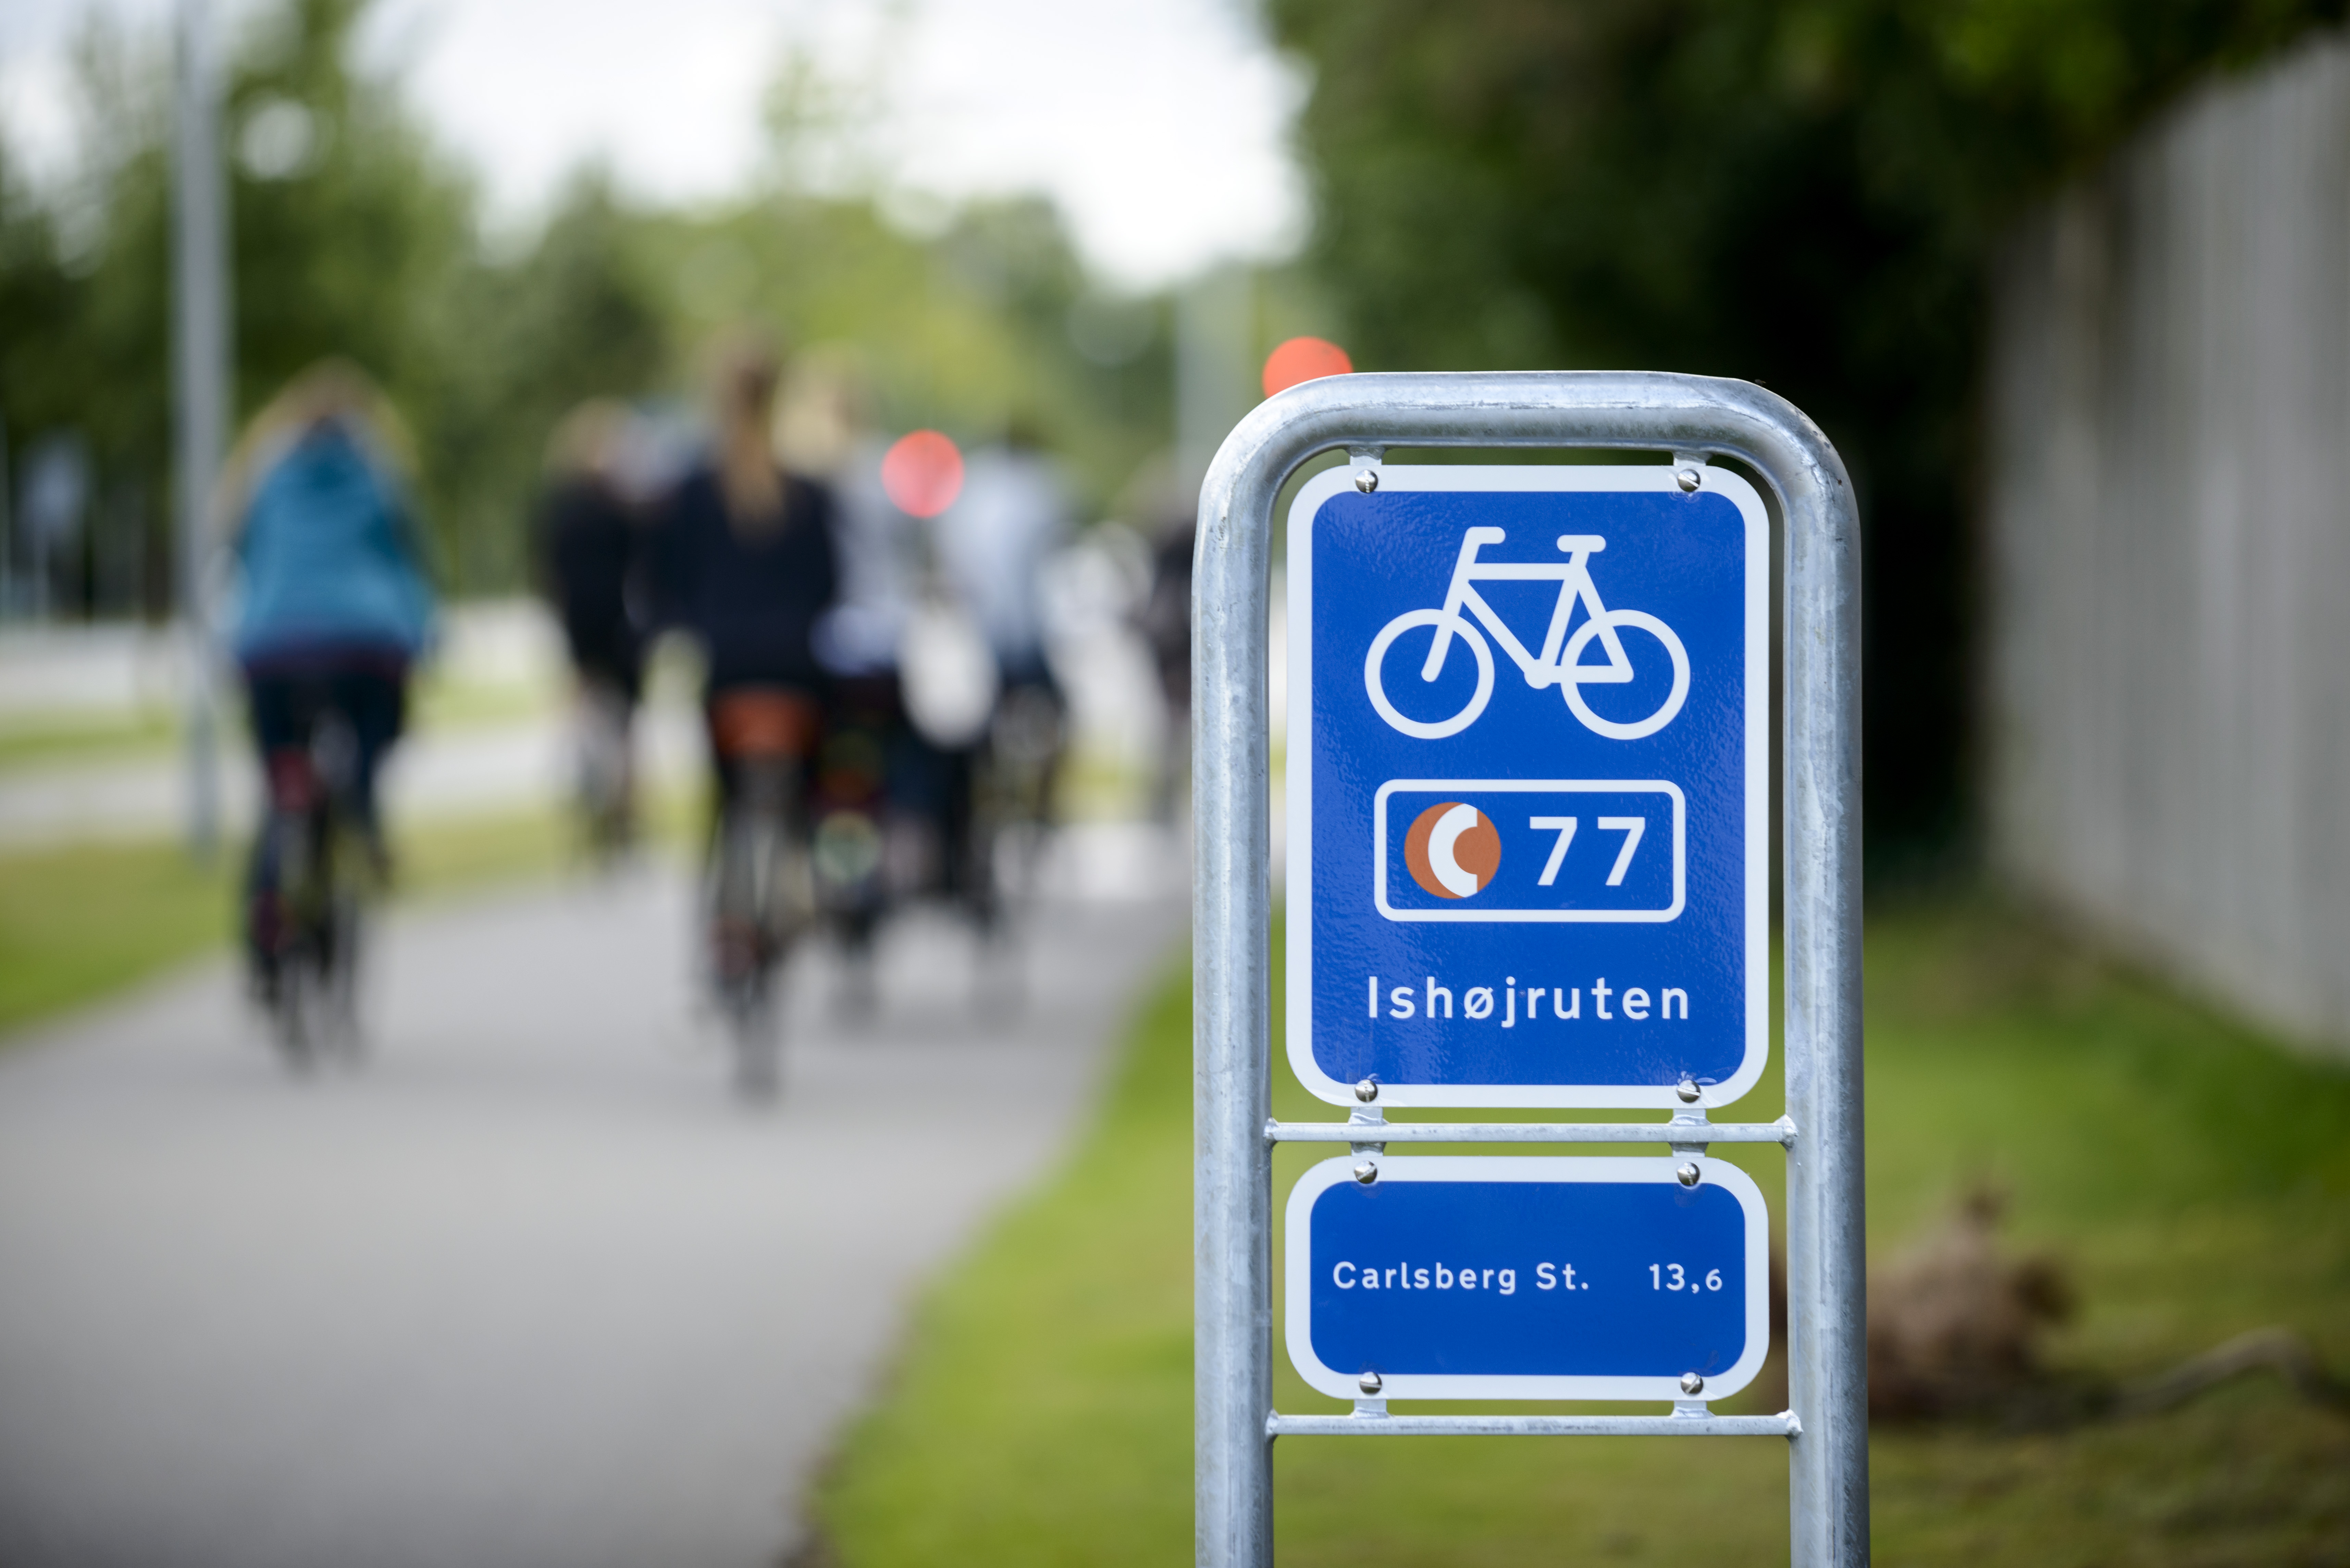 strømper Kræft Fantasi Vejvisning – Find vej til nye eventyr, hvorhen og hvordan? - Cycling  Embassy of Denmark